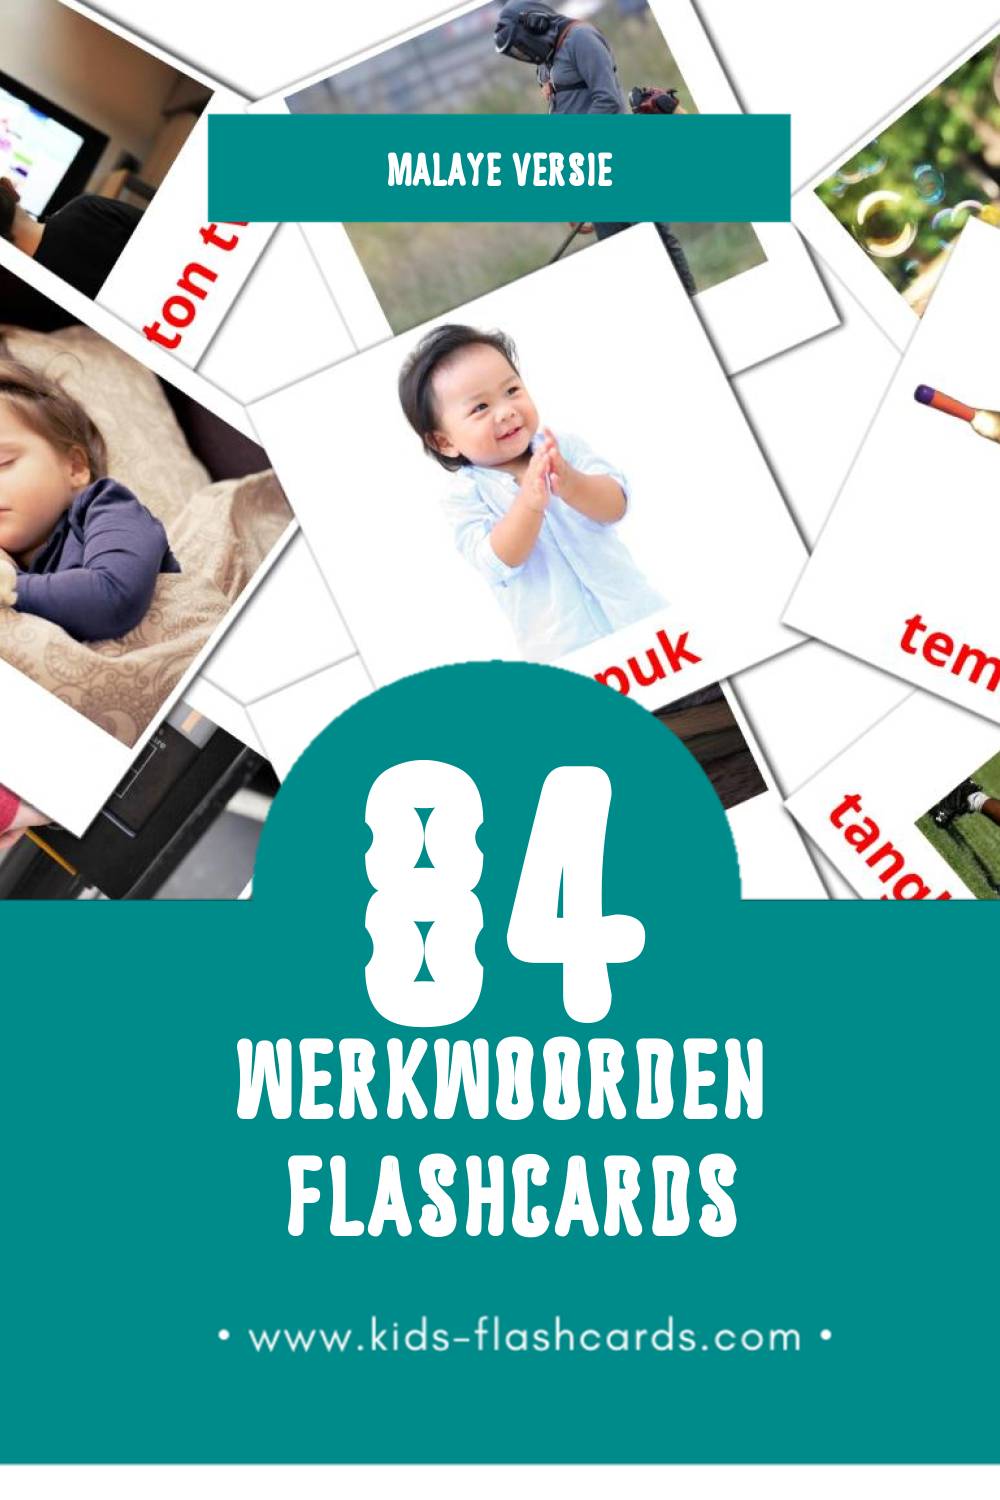 Visuele PERBUATAN Flashcards voor Kleuters (126 kaarten in het Malay)